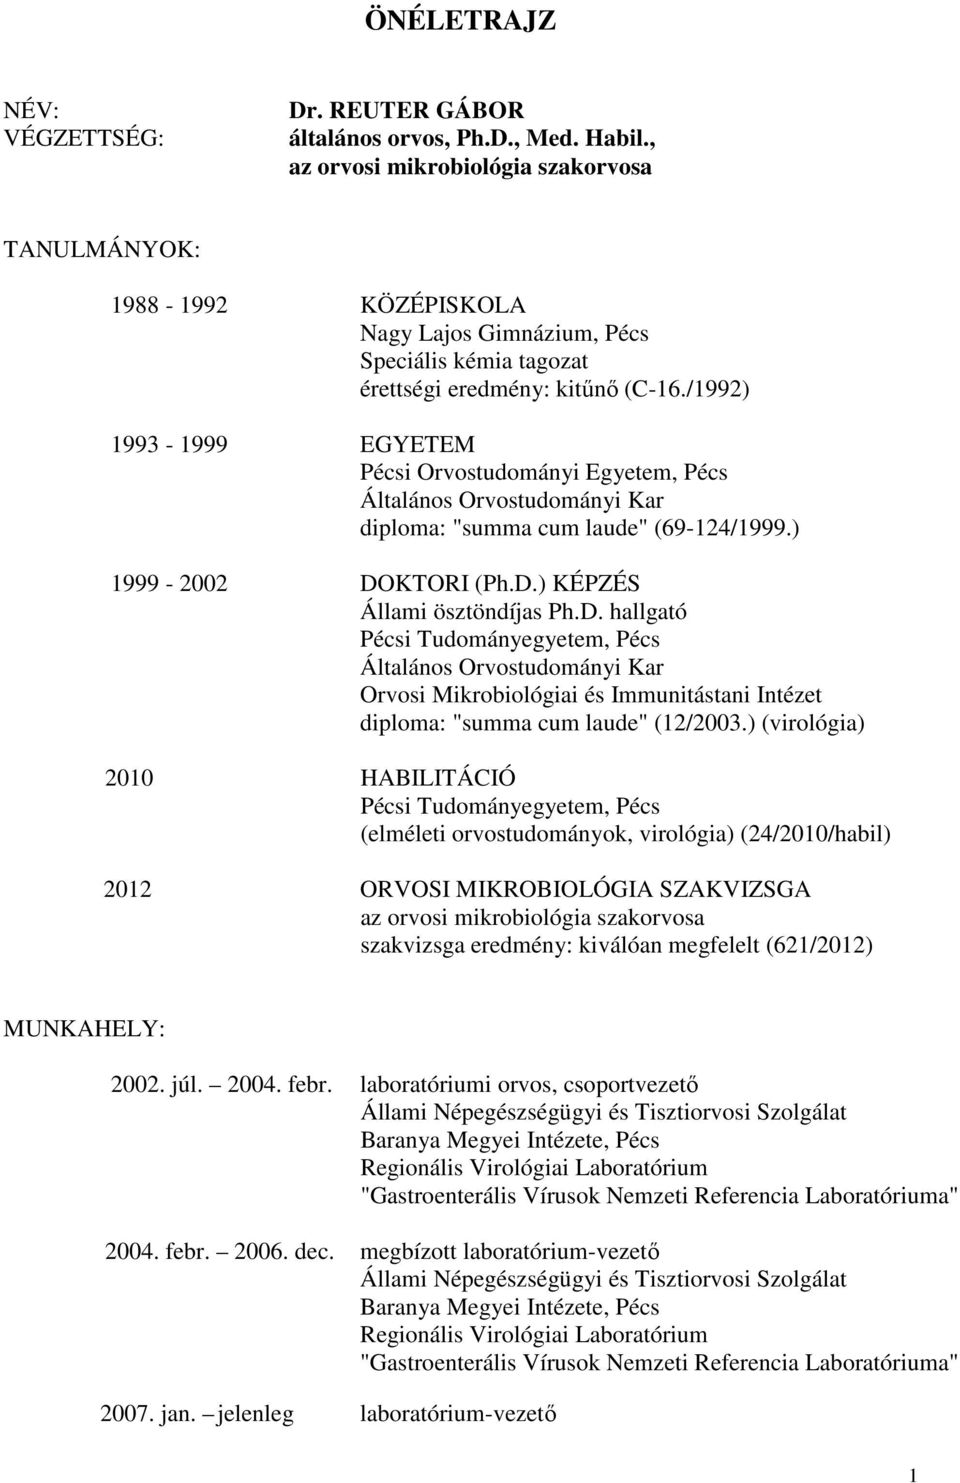 /1992) 1993-1999 EGYETEM Pécsi Orvostudományi Egyetem, Pécs Általános Orvostudományi Kar diploma: "summa cum laude" (69-124/1999.) 1999-2002 DO